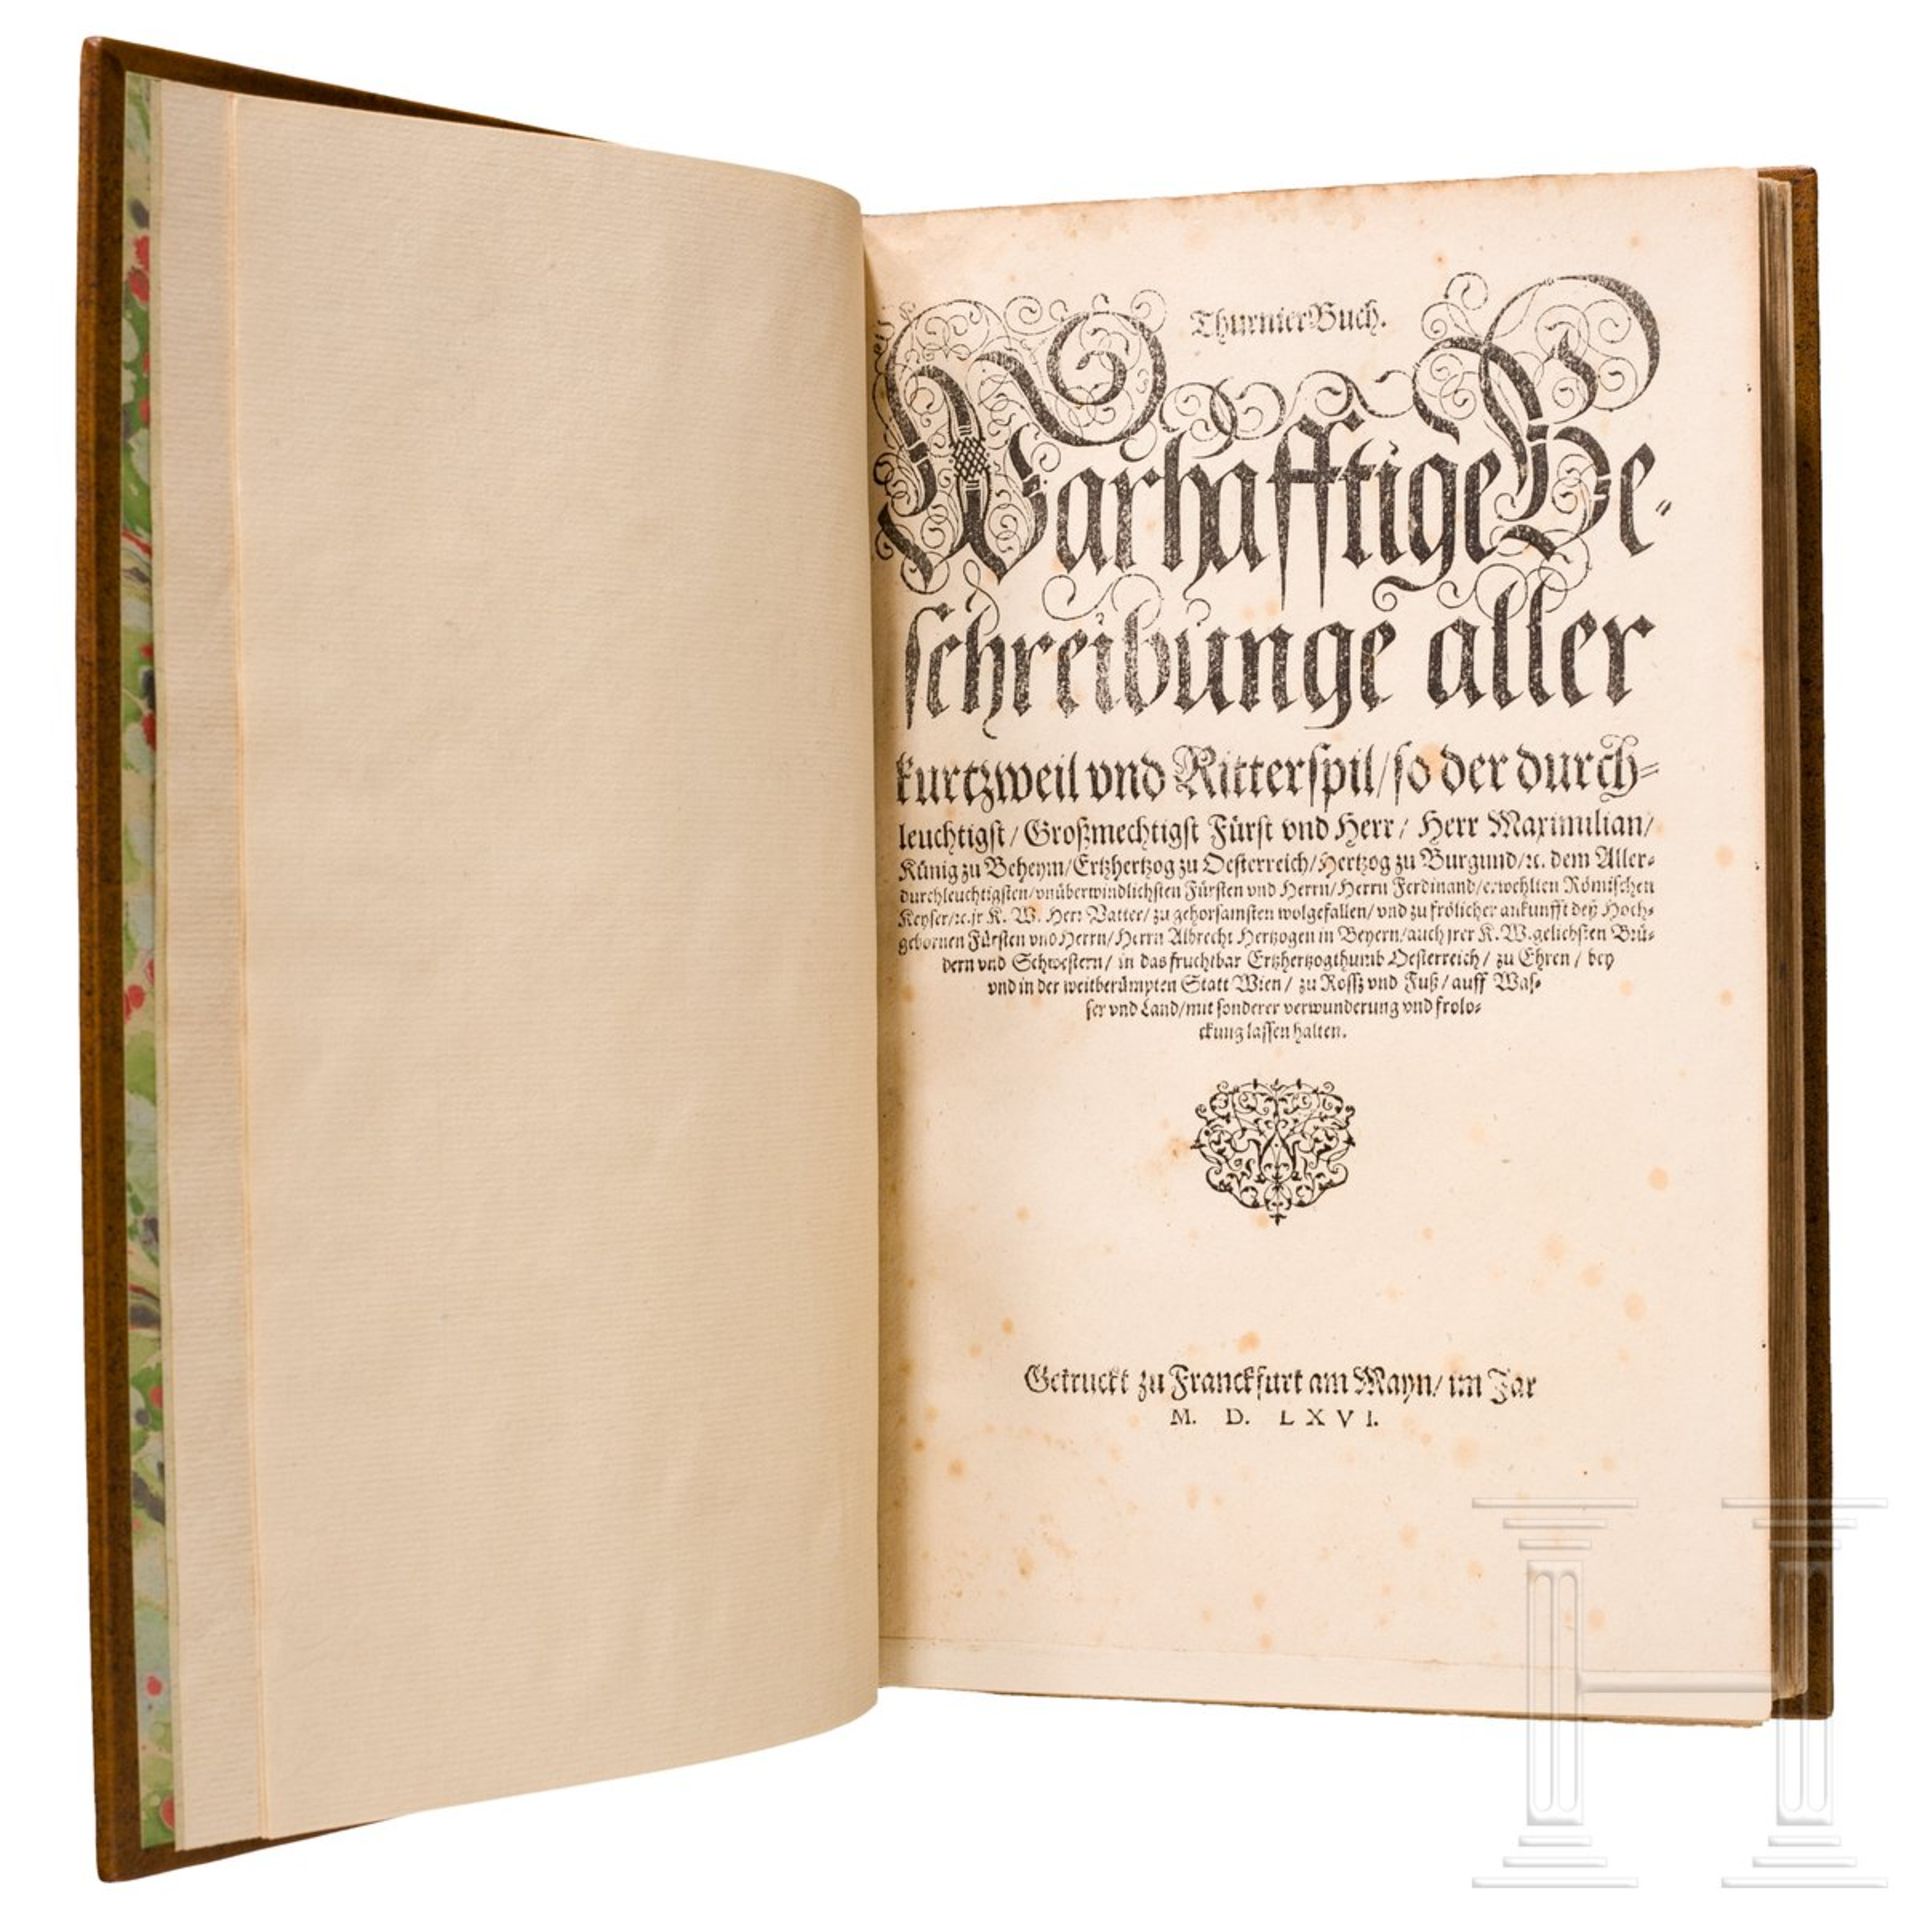 Sigmundt Feyerabend, "Thurnier-Buch", Frankfurt/M., 1578236 römisch paginierte Doppelseiten,